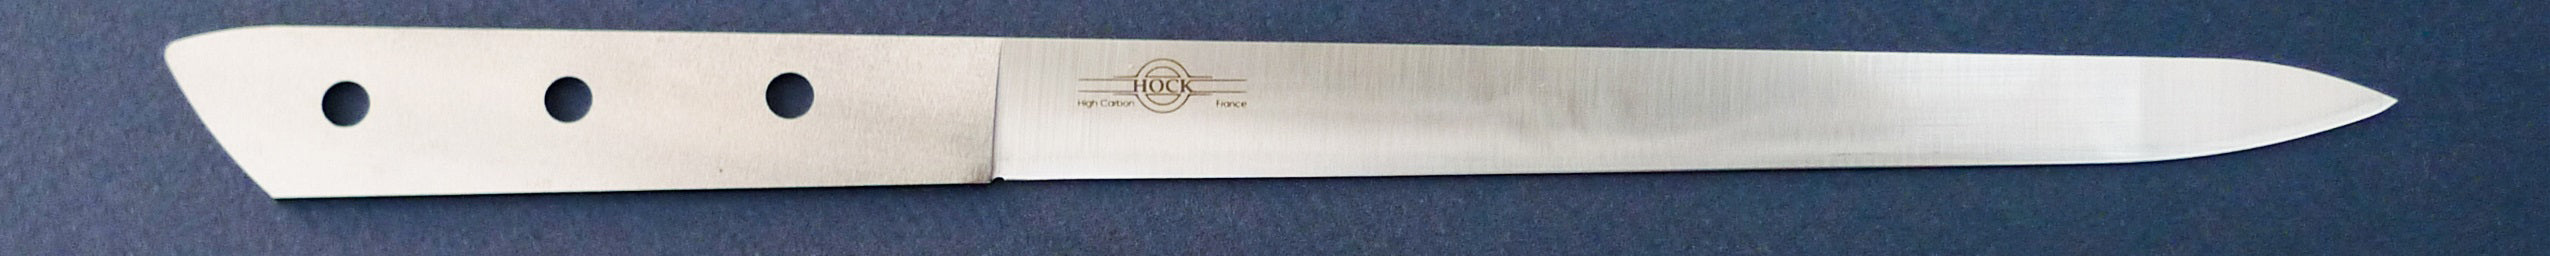 Hock 8" Slicing/Carving Knife - High Carbon Steel - France